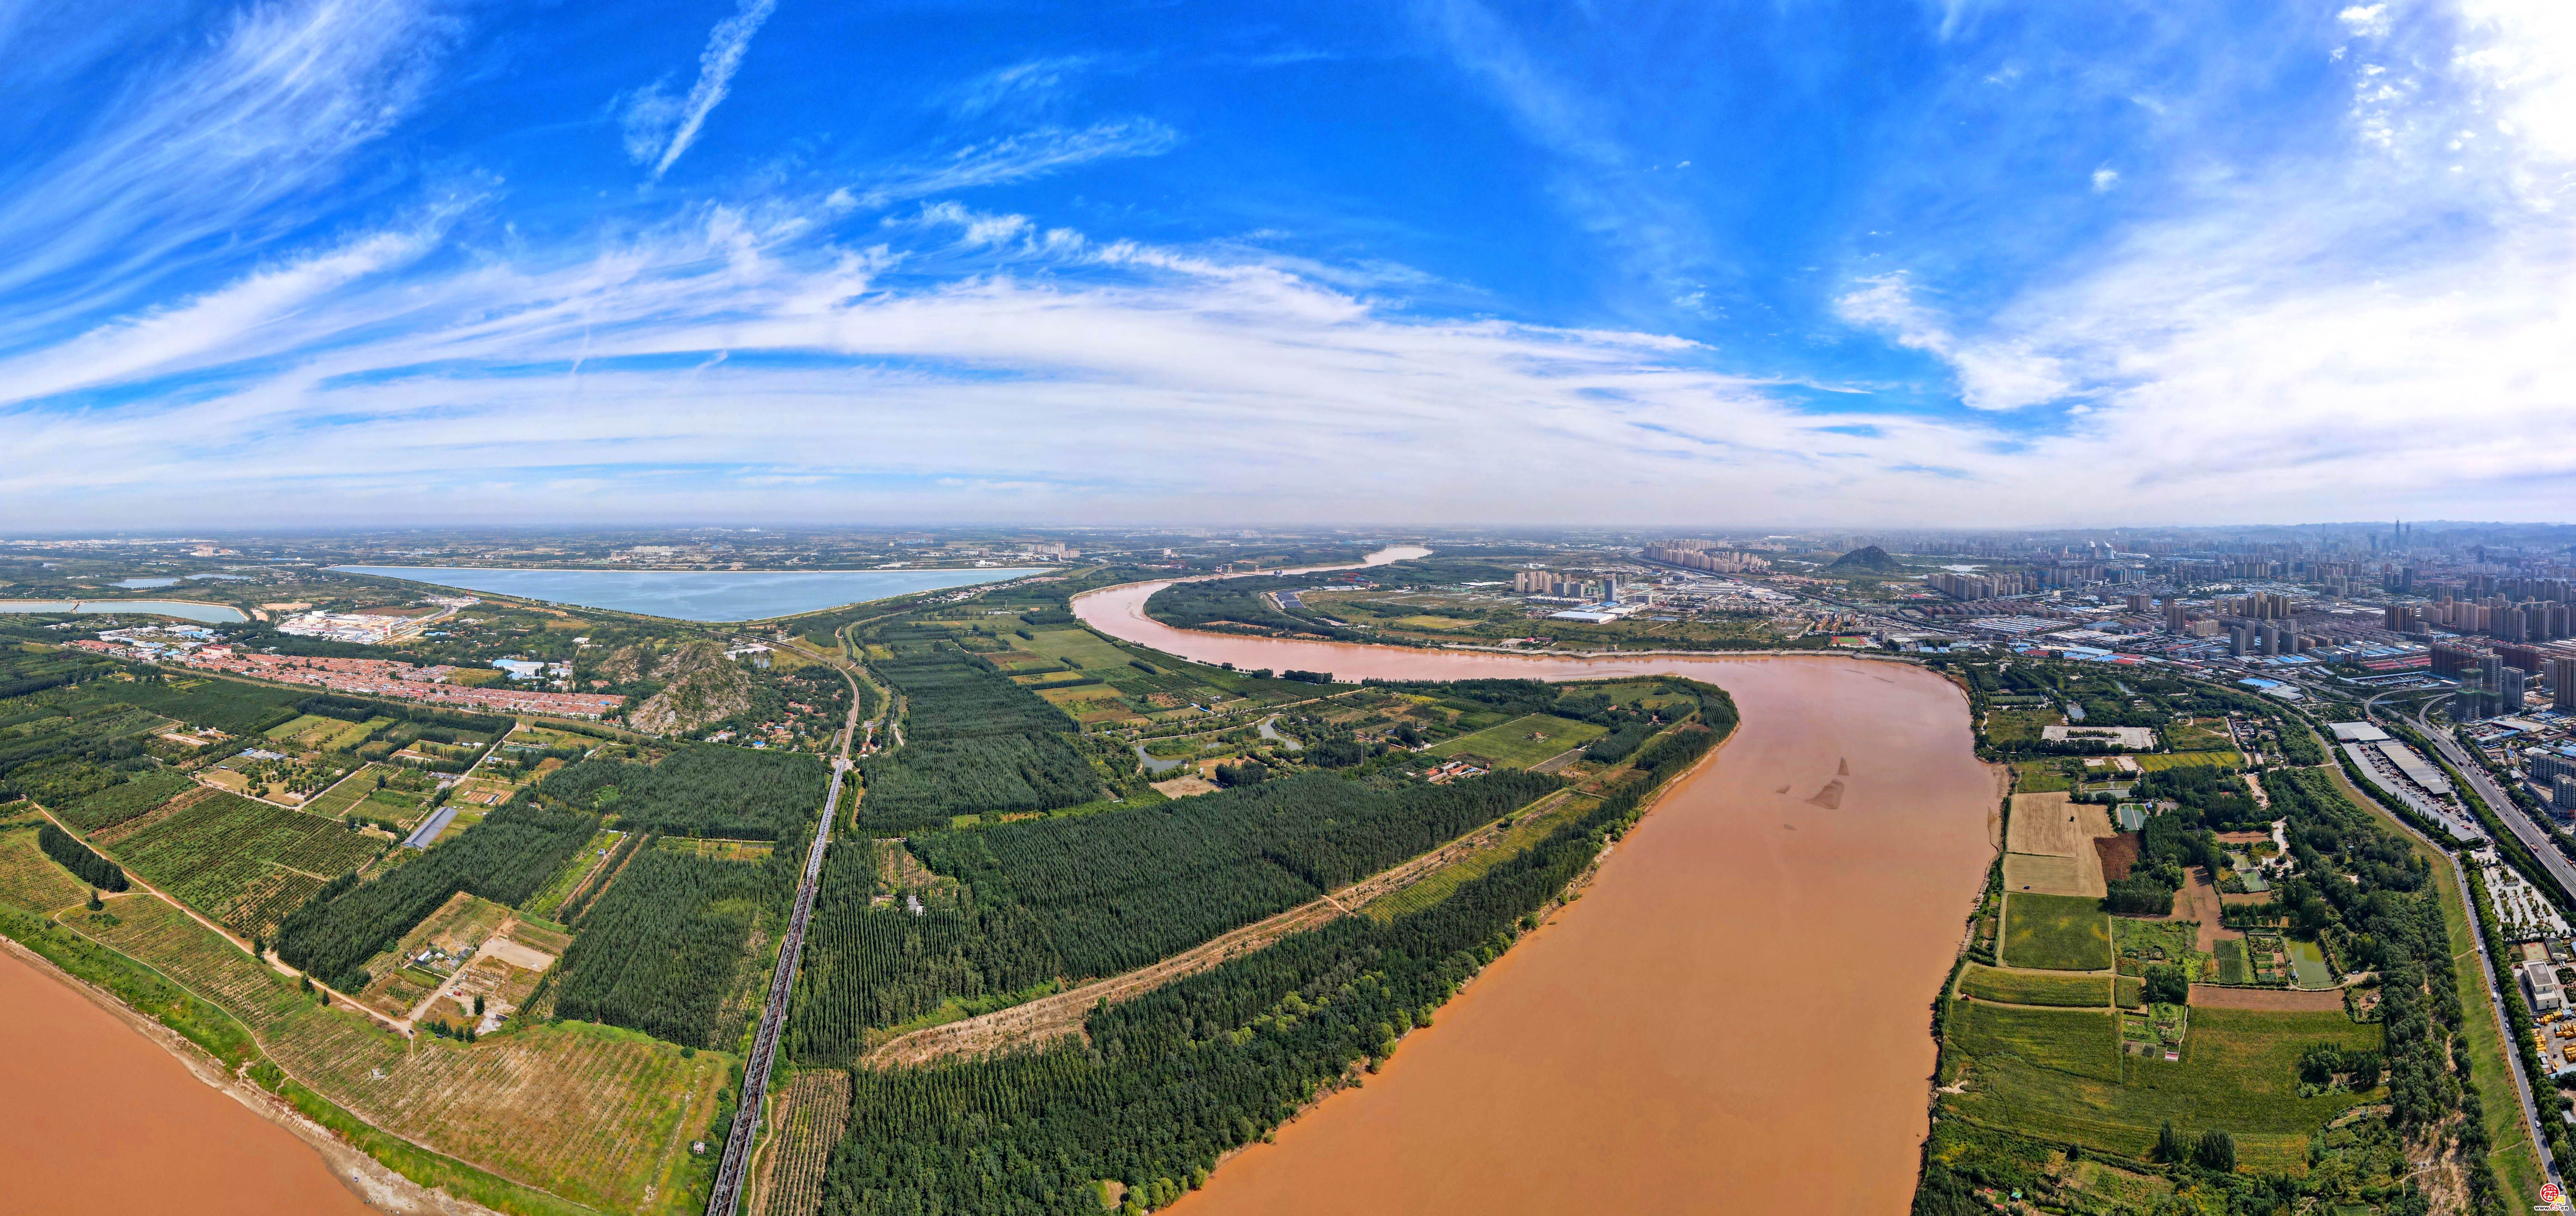 高空远眺,绿色生态景观带沿济南黄河两岸铺开,隔河相望的鹊山和华山